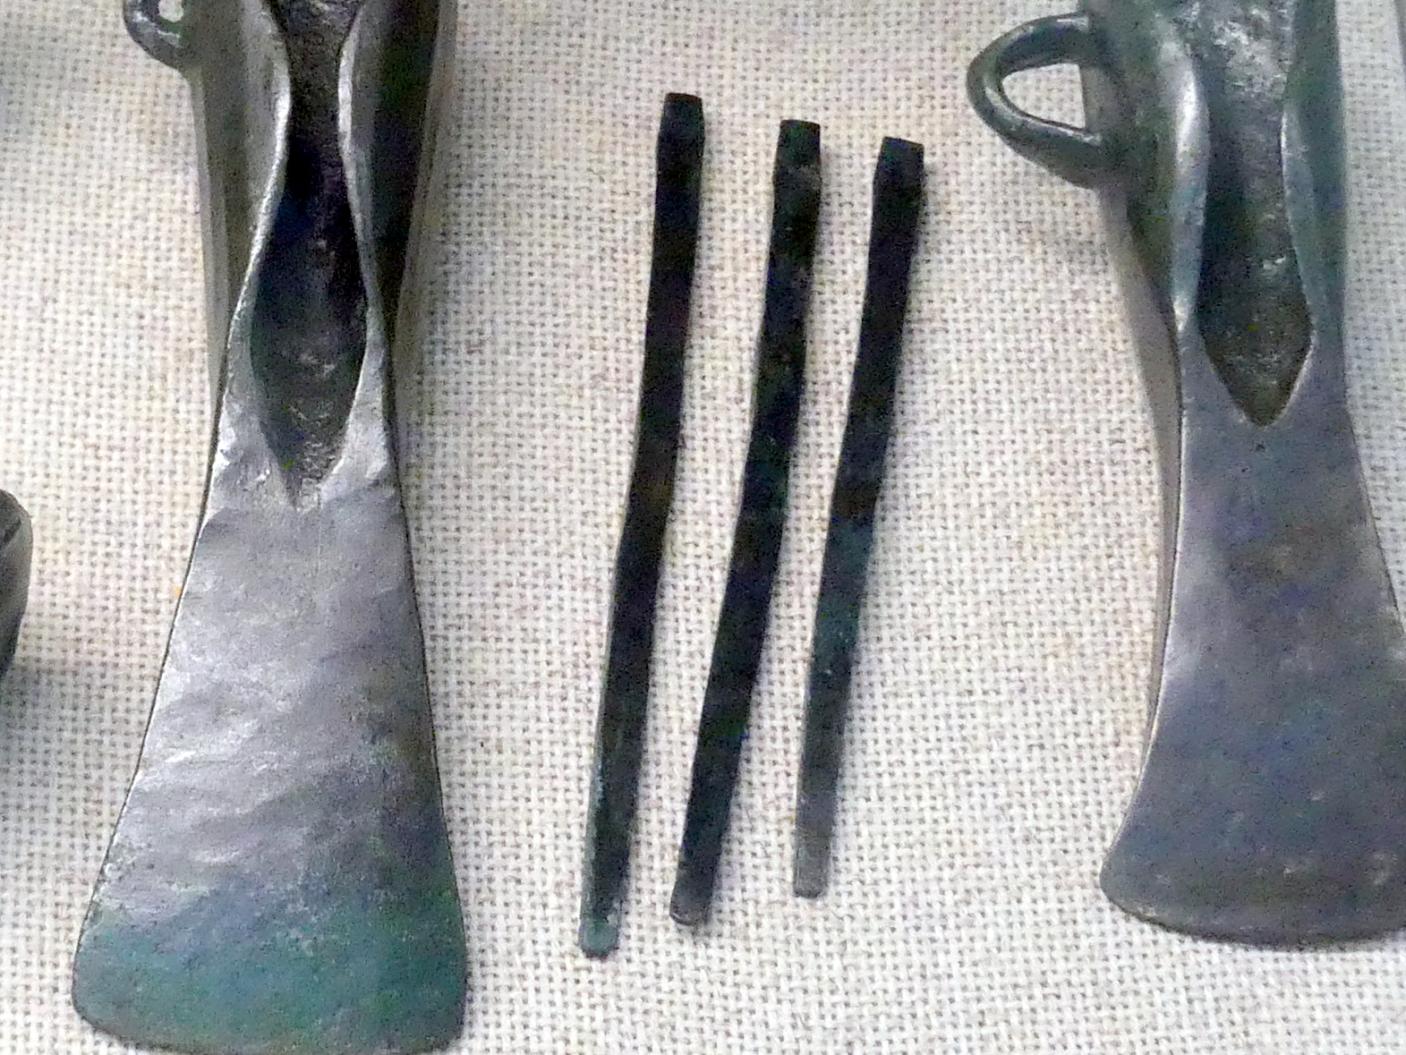 3 Pfrieme, Urnenfelderzeit, 1400 - 700 v. Chr., 800 - 700 v. Chr., Bild 1/3